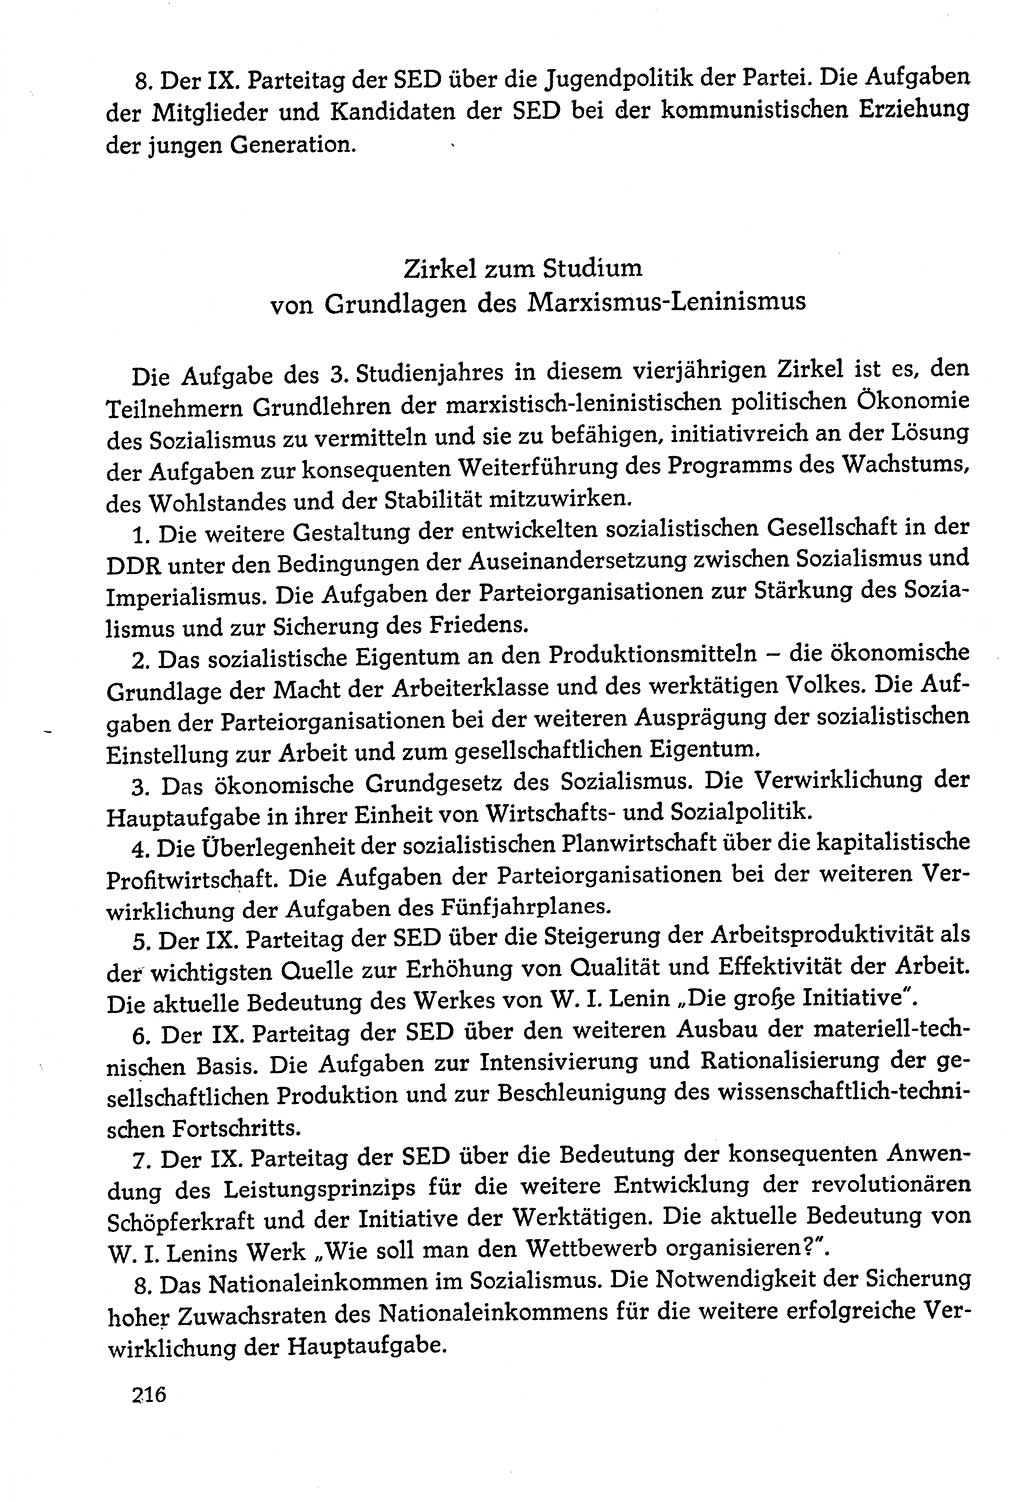 Dokumente der Sozialistischen Einheitspartei Deutschlands (SED) [Deutsche Demokratische Republik (DDR)] 1978-1979, Seite 216 (Dok. SED DDR 1978-1979, S. 216)